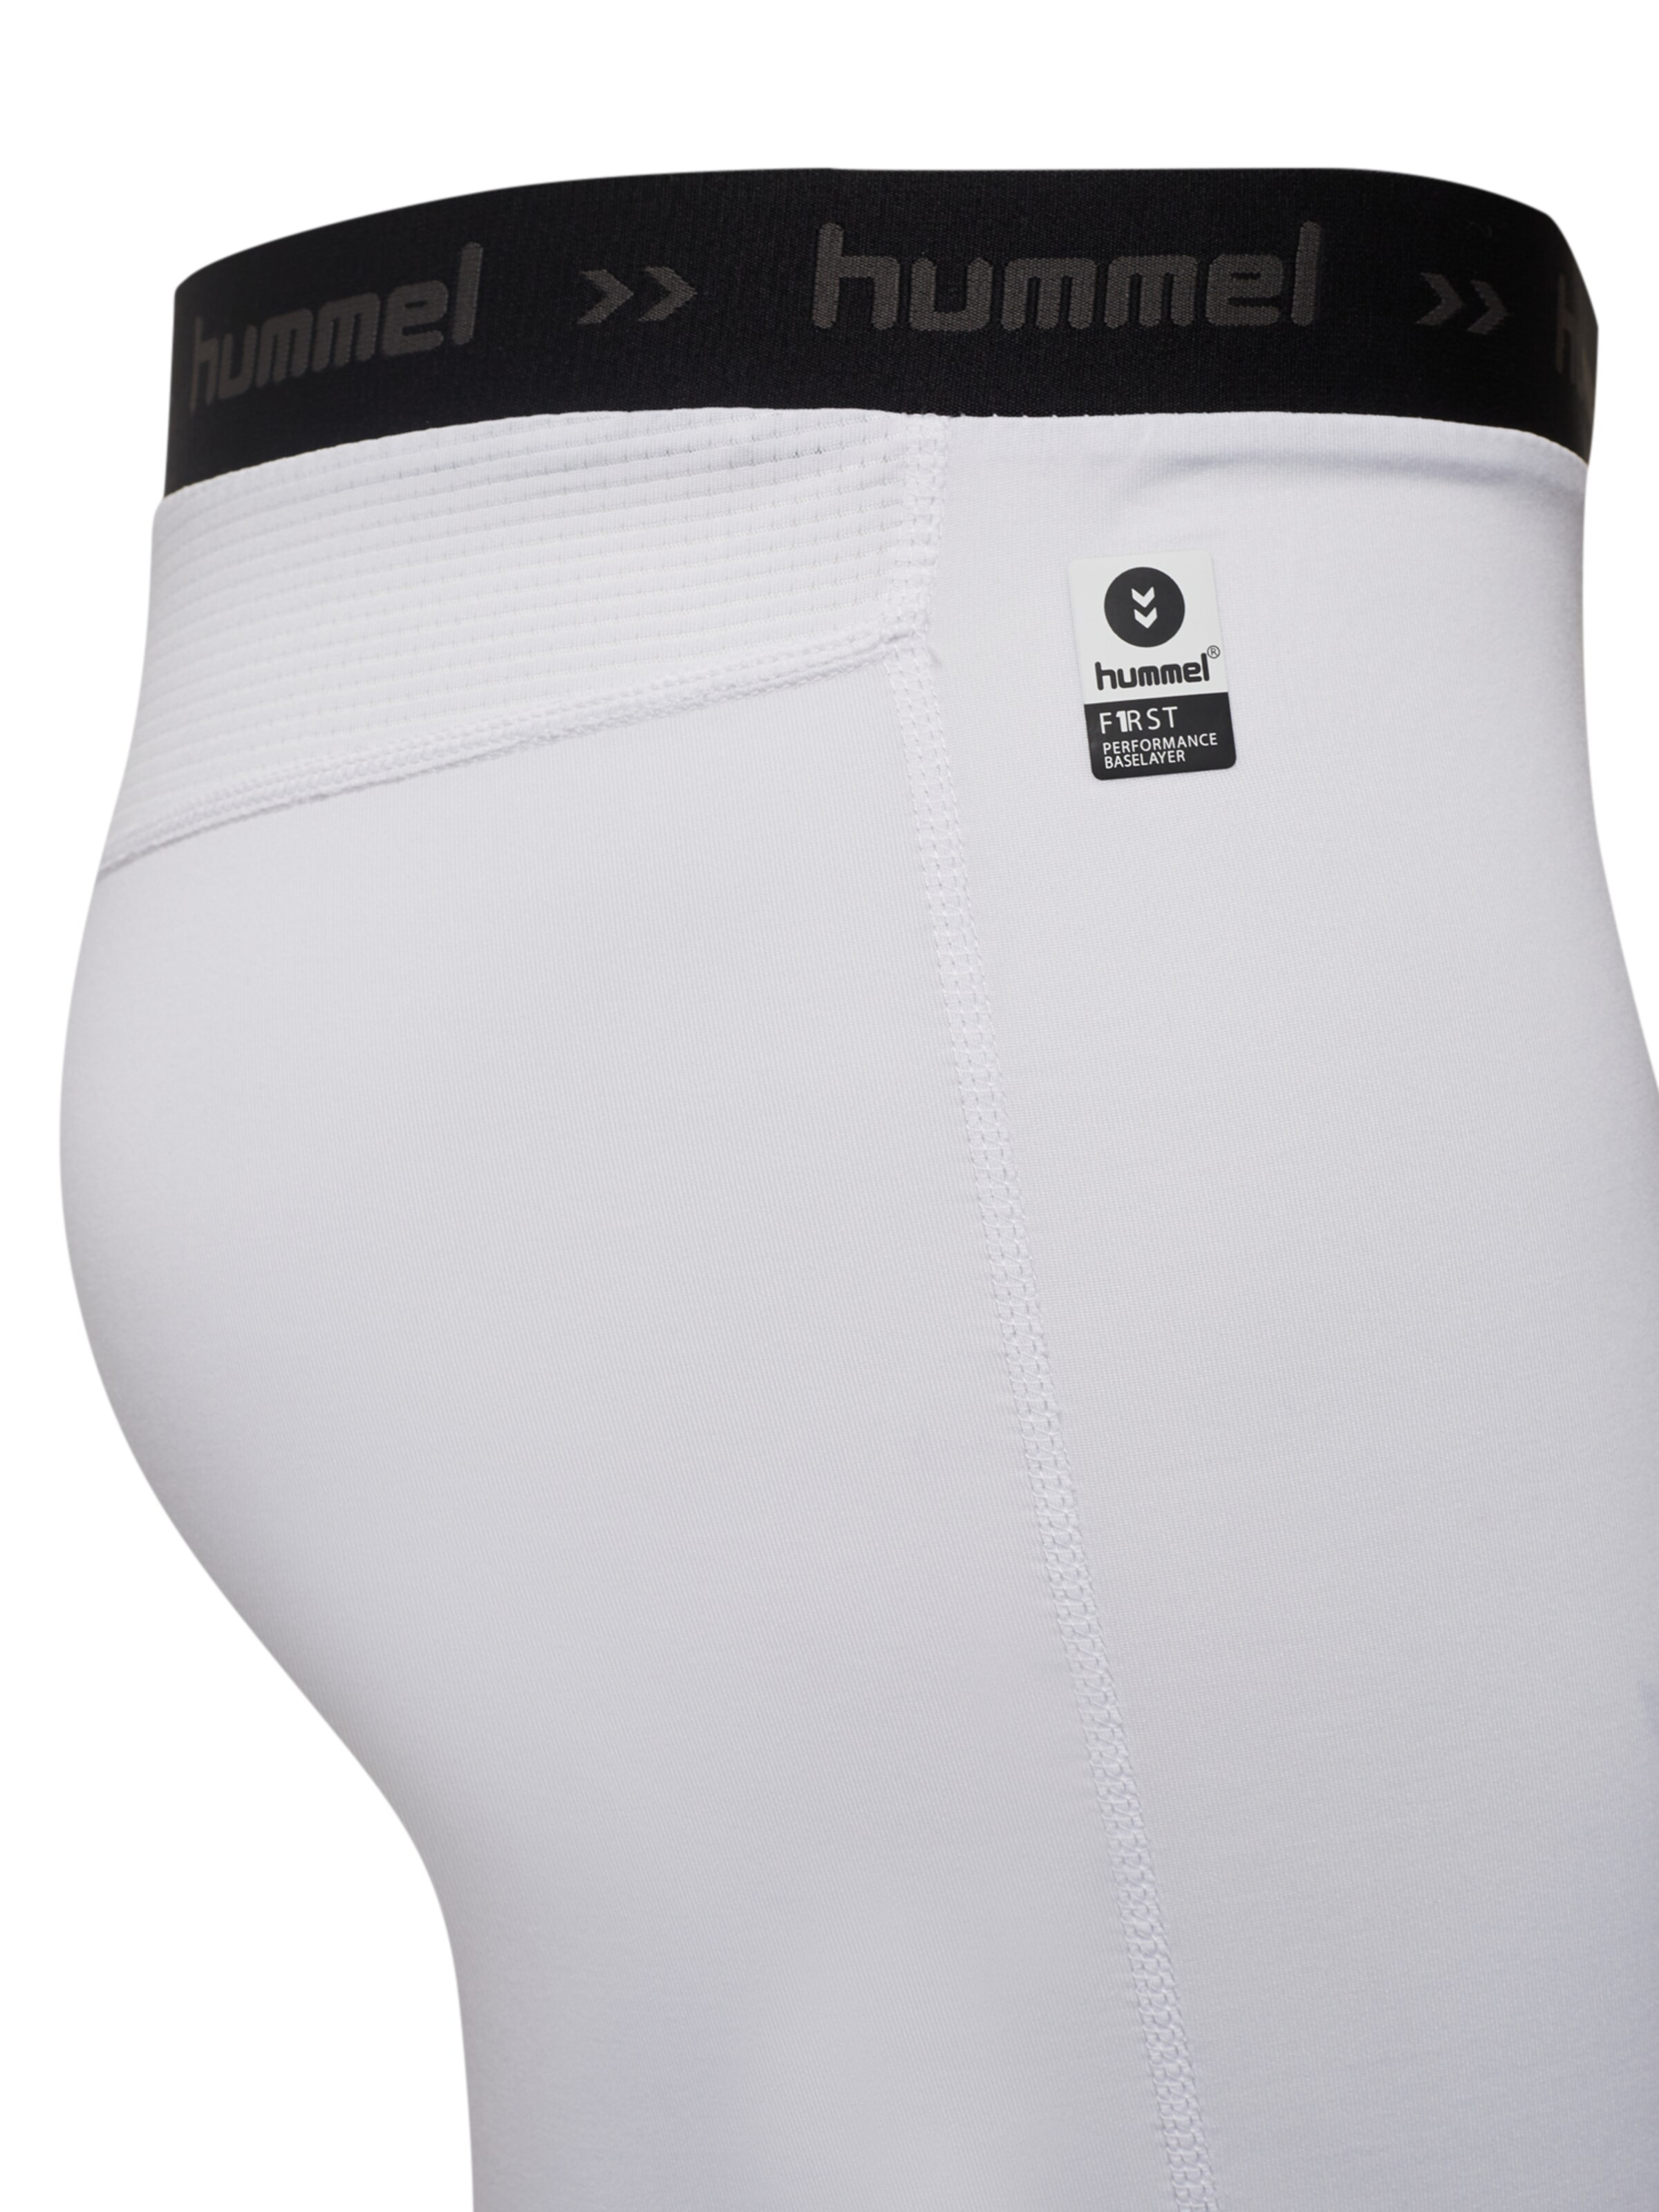 Männer Sportarten Hummel Shorts in Offwhite - GT95847